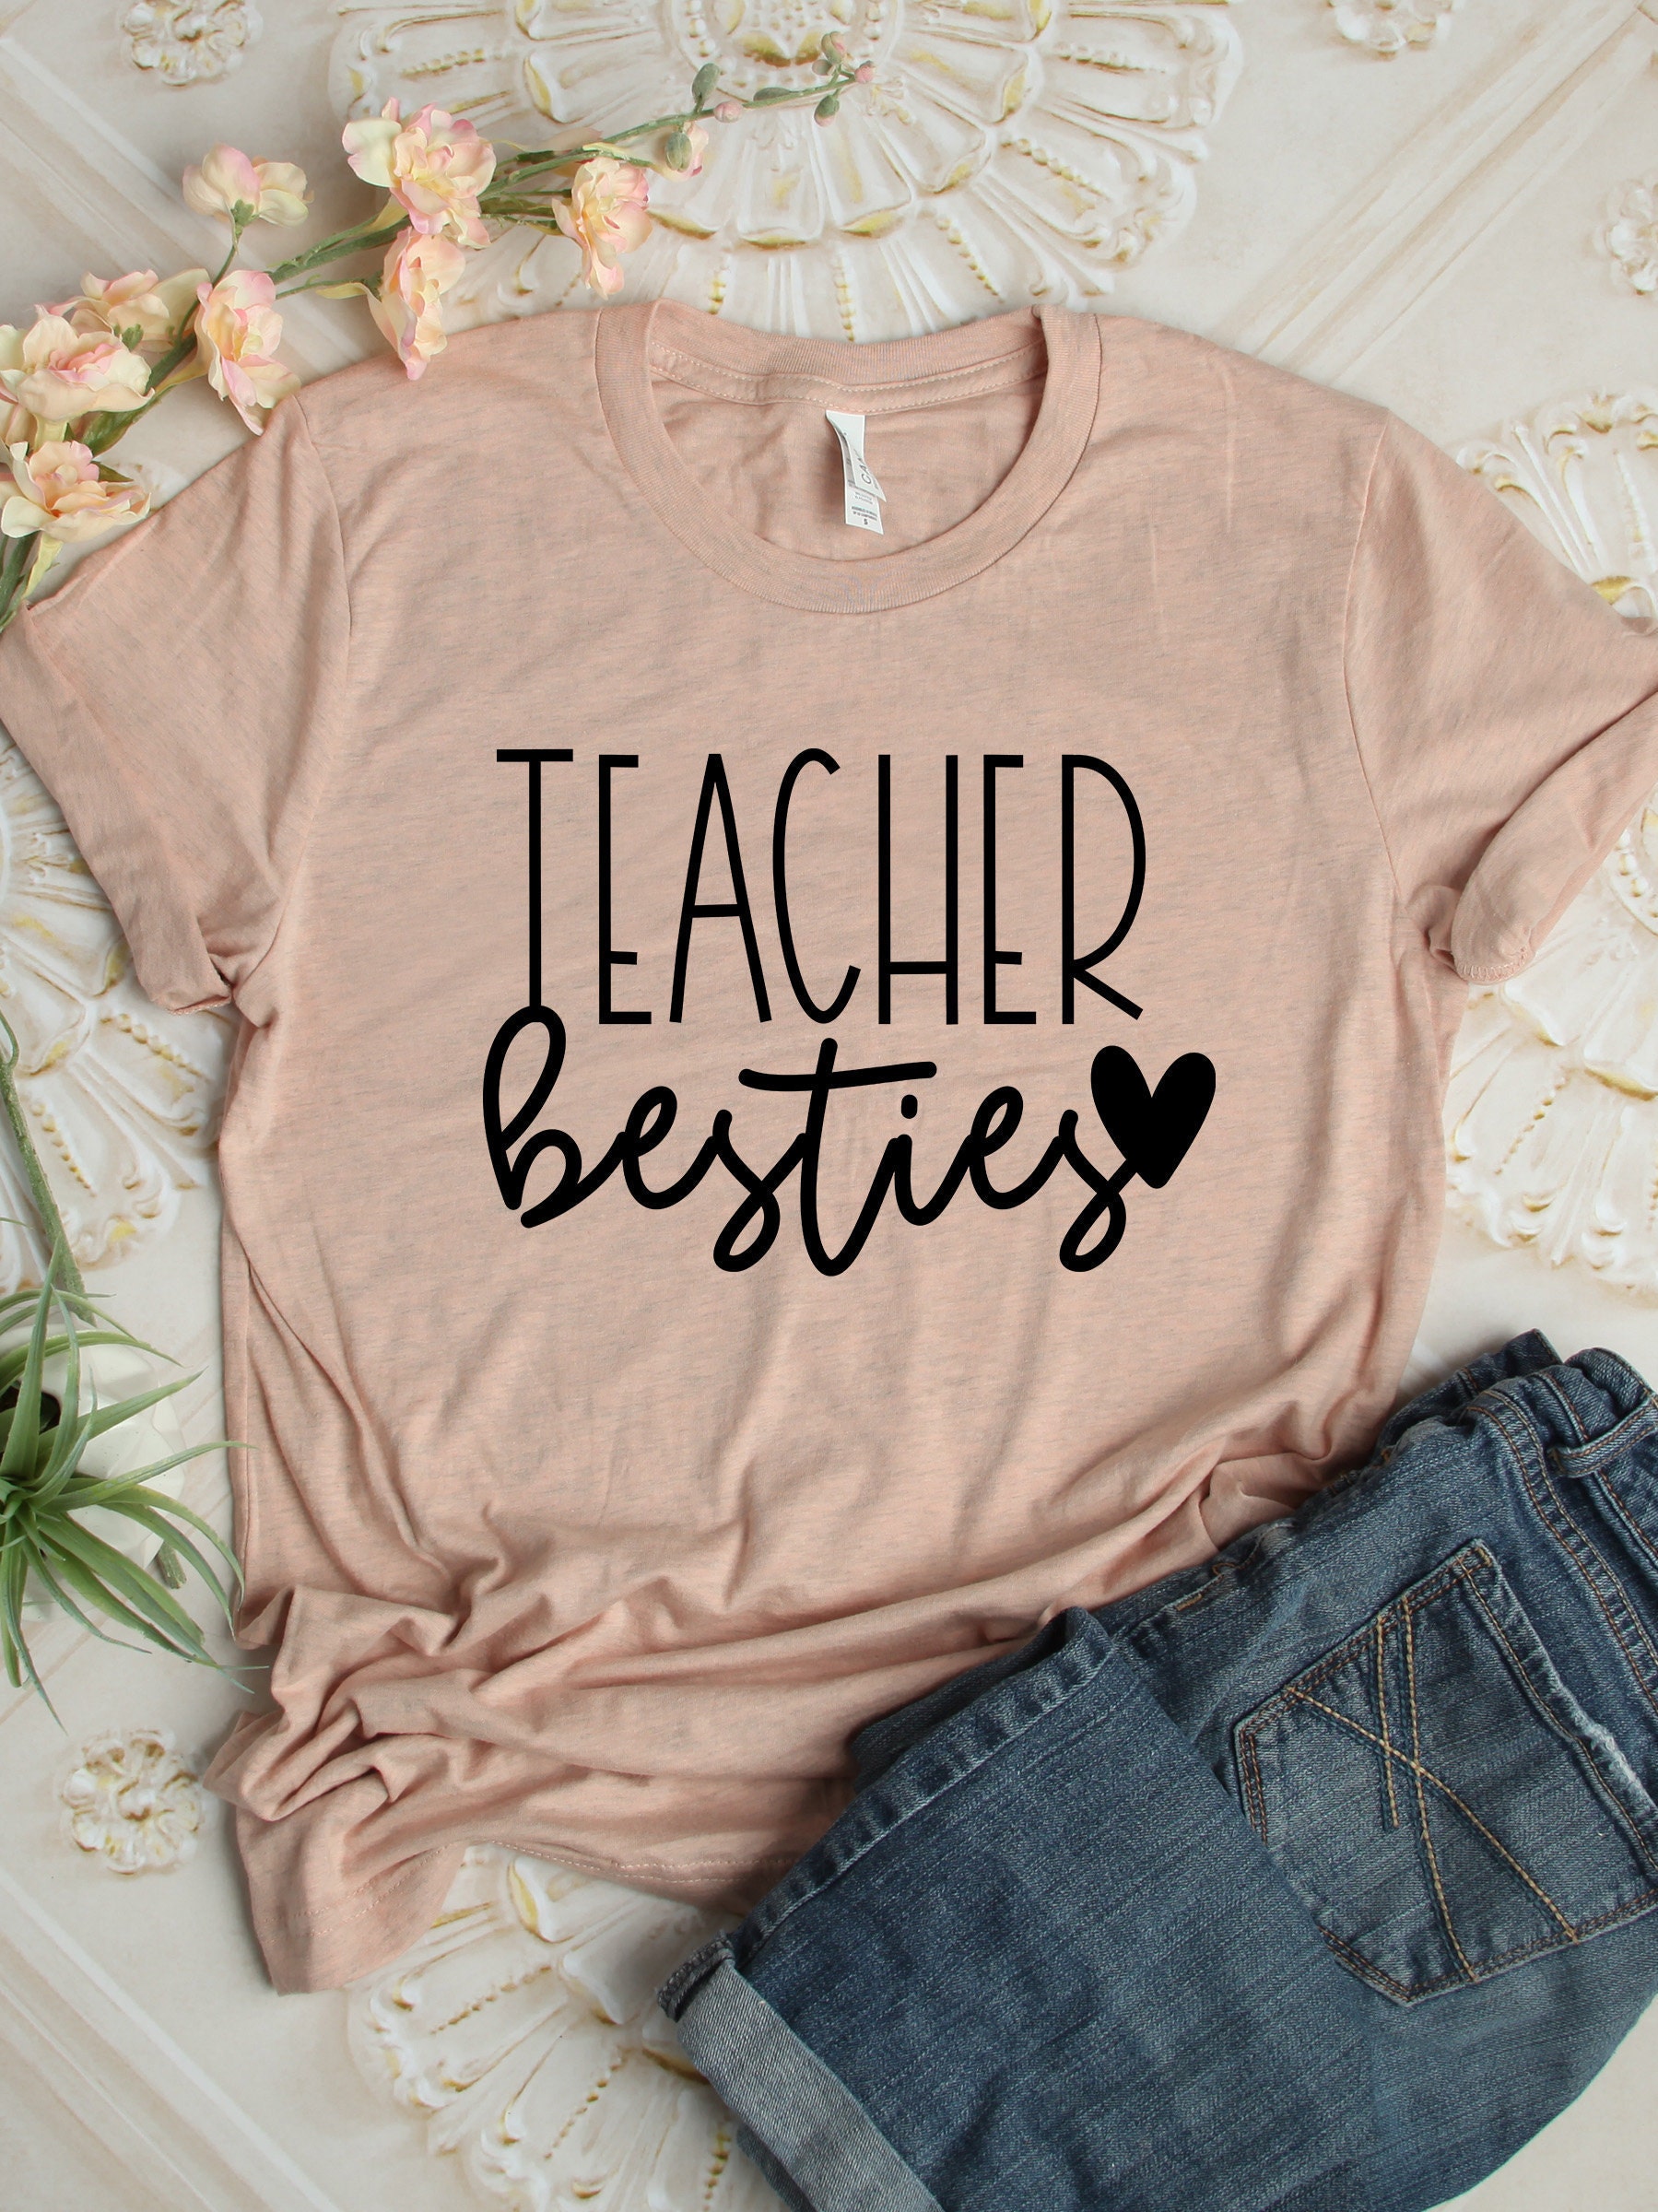  She's My Teacher Bestie - Camisa personalizada, camisetas para  profesoras de escuela, camisetas personalizadas para mujer, camisa de  profesora de bondad, camisas de profesora para mujer, camisa de profesora  sustituta 